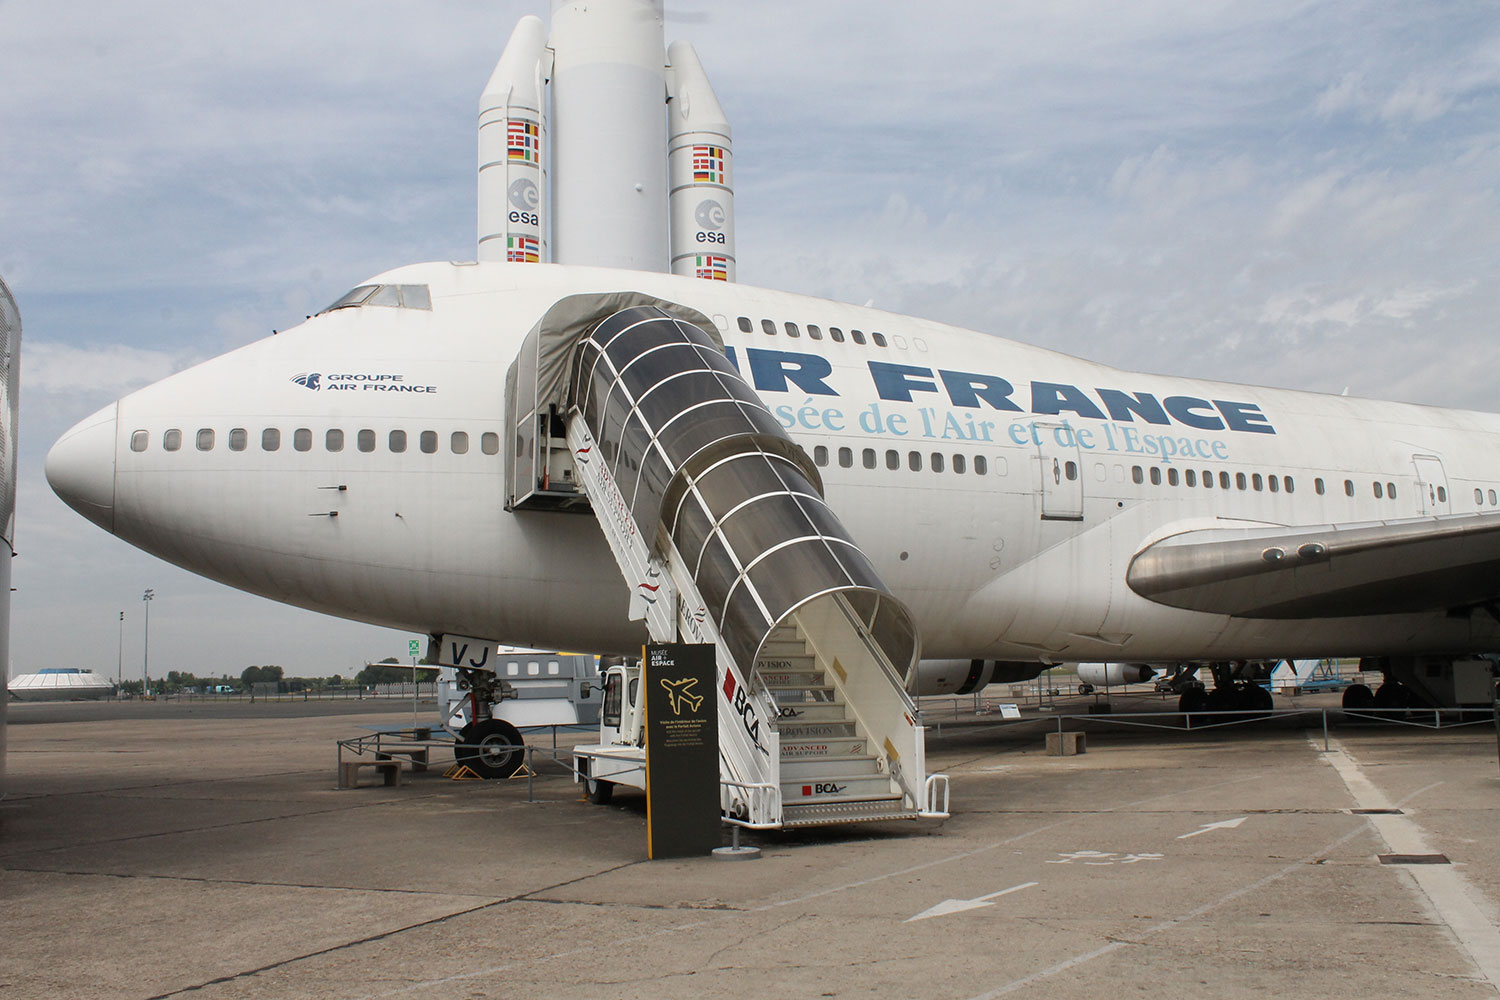 Paris Le Bourget Air France Boeing 747-100 F-BVPJ